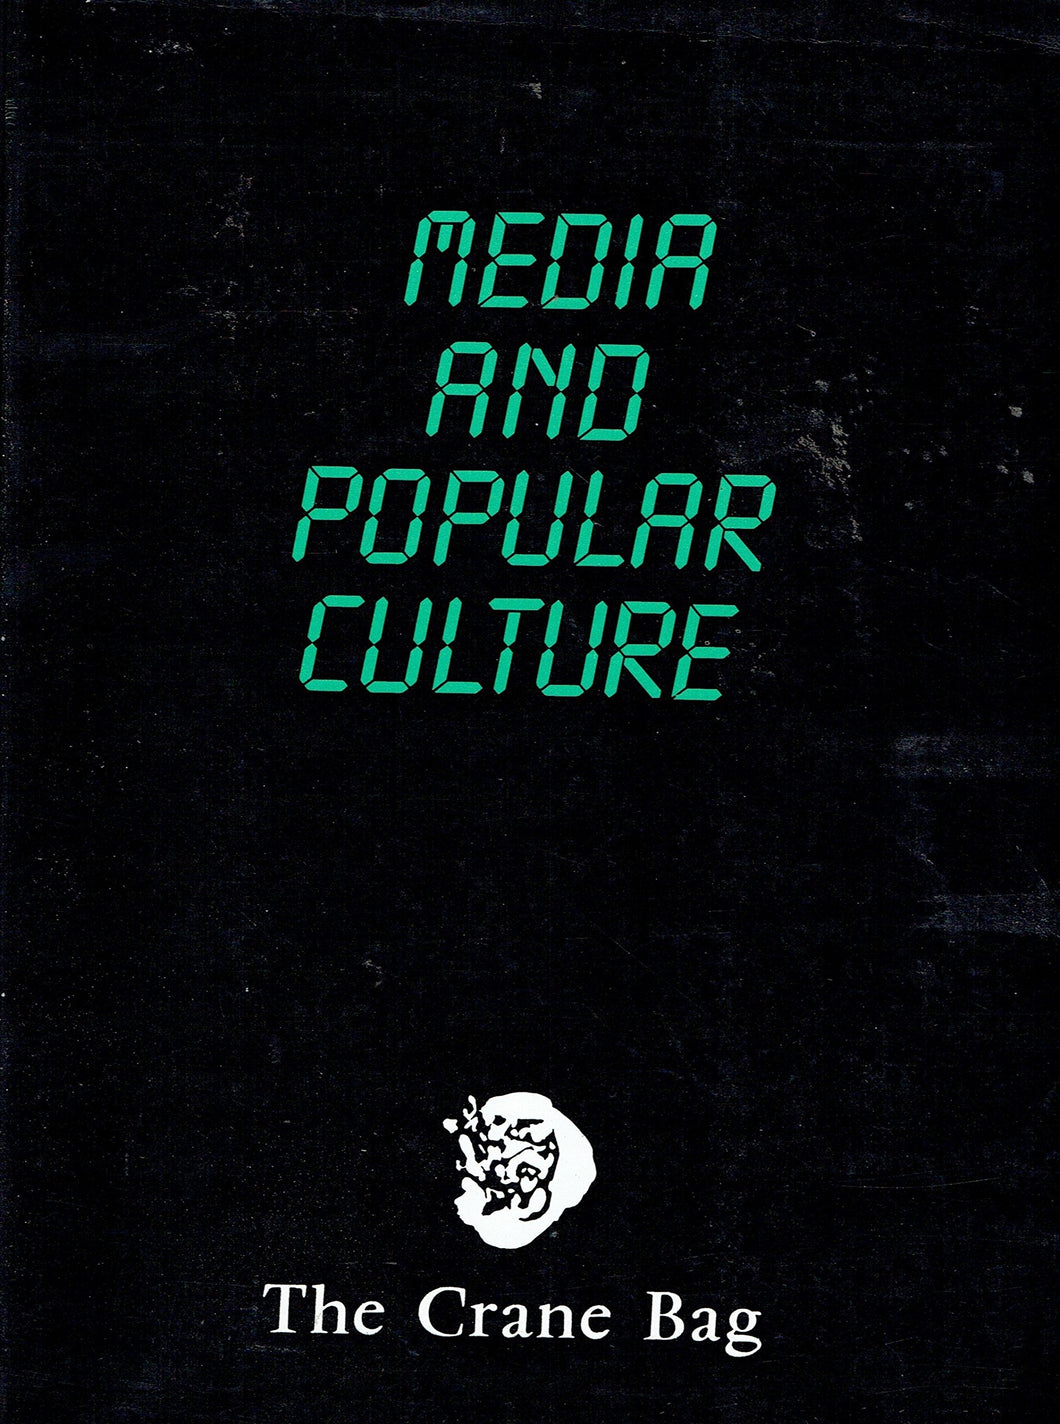 The Crane Bag, Vol. 8, No. 2, 1984: Media and Popular Culture